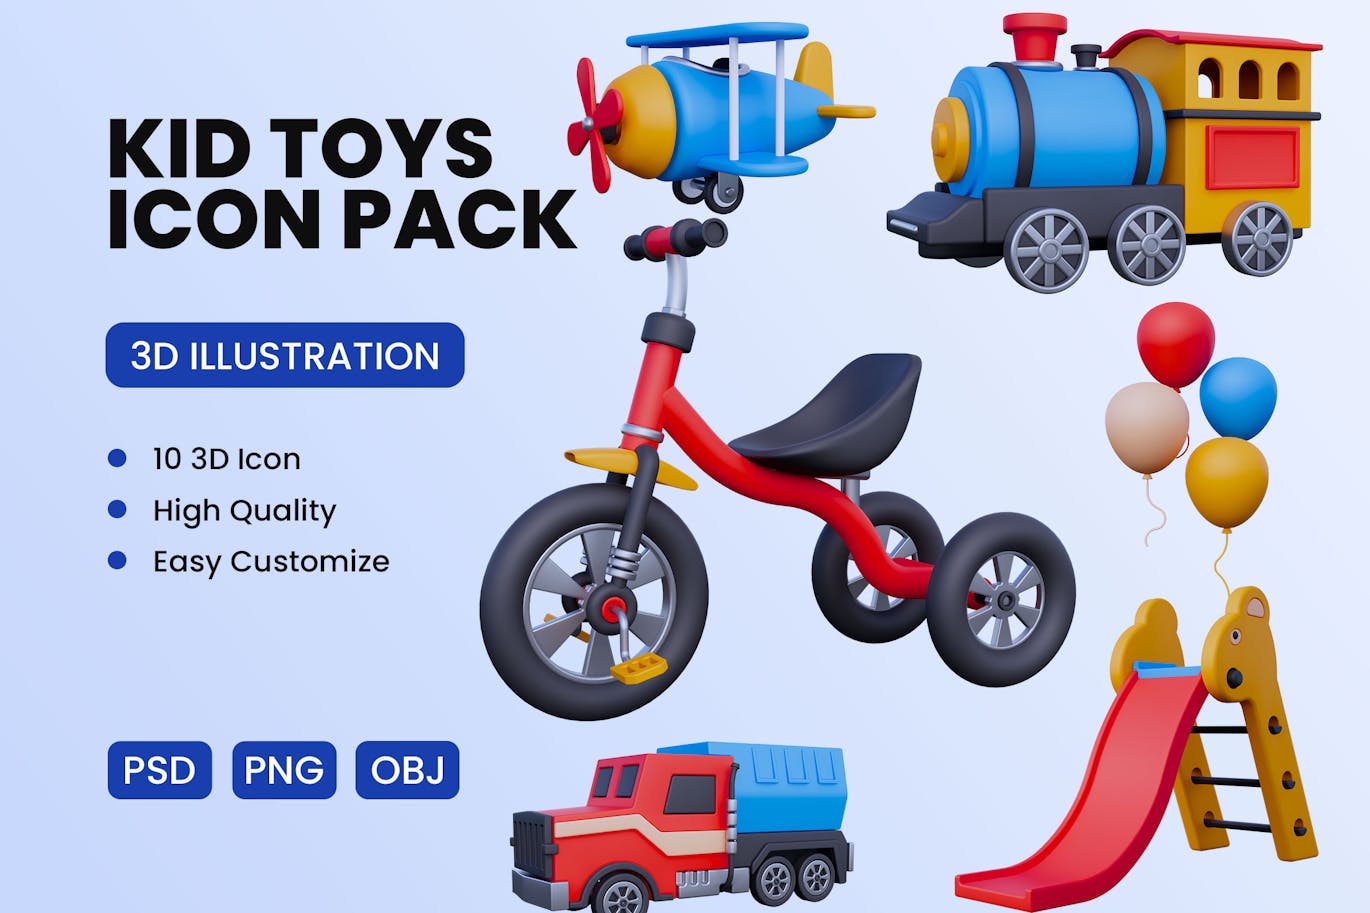 儿童玩具3D图标模型素材合集 (PNG,PSD,OBJ,FBX)